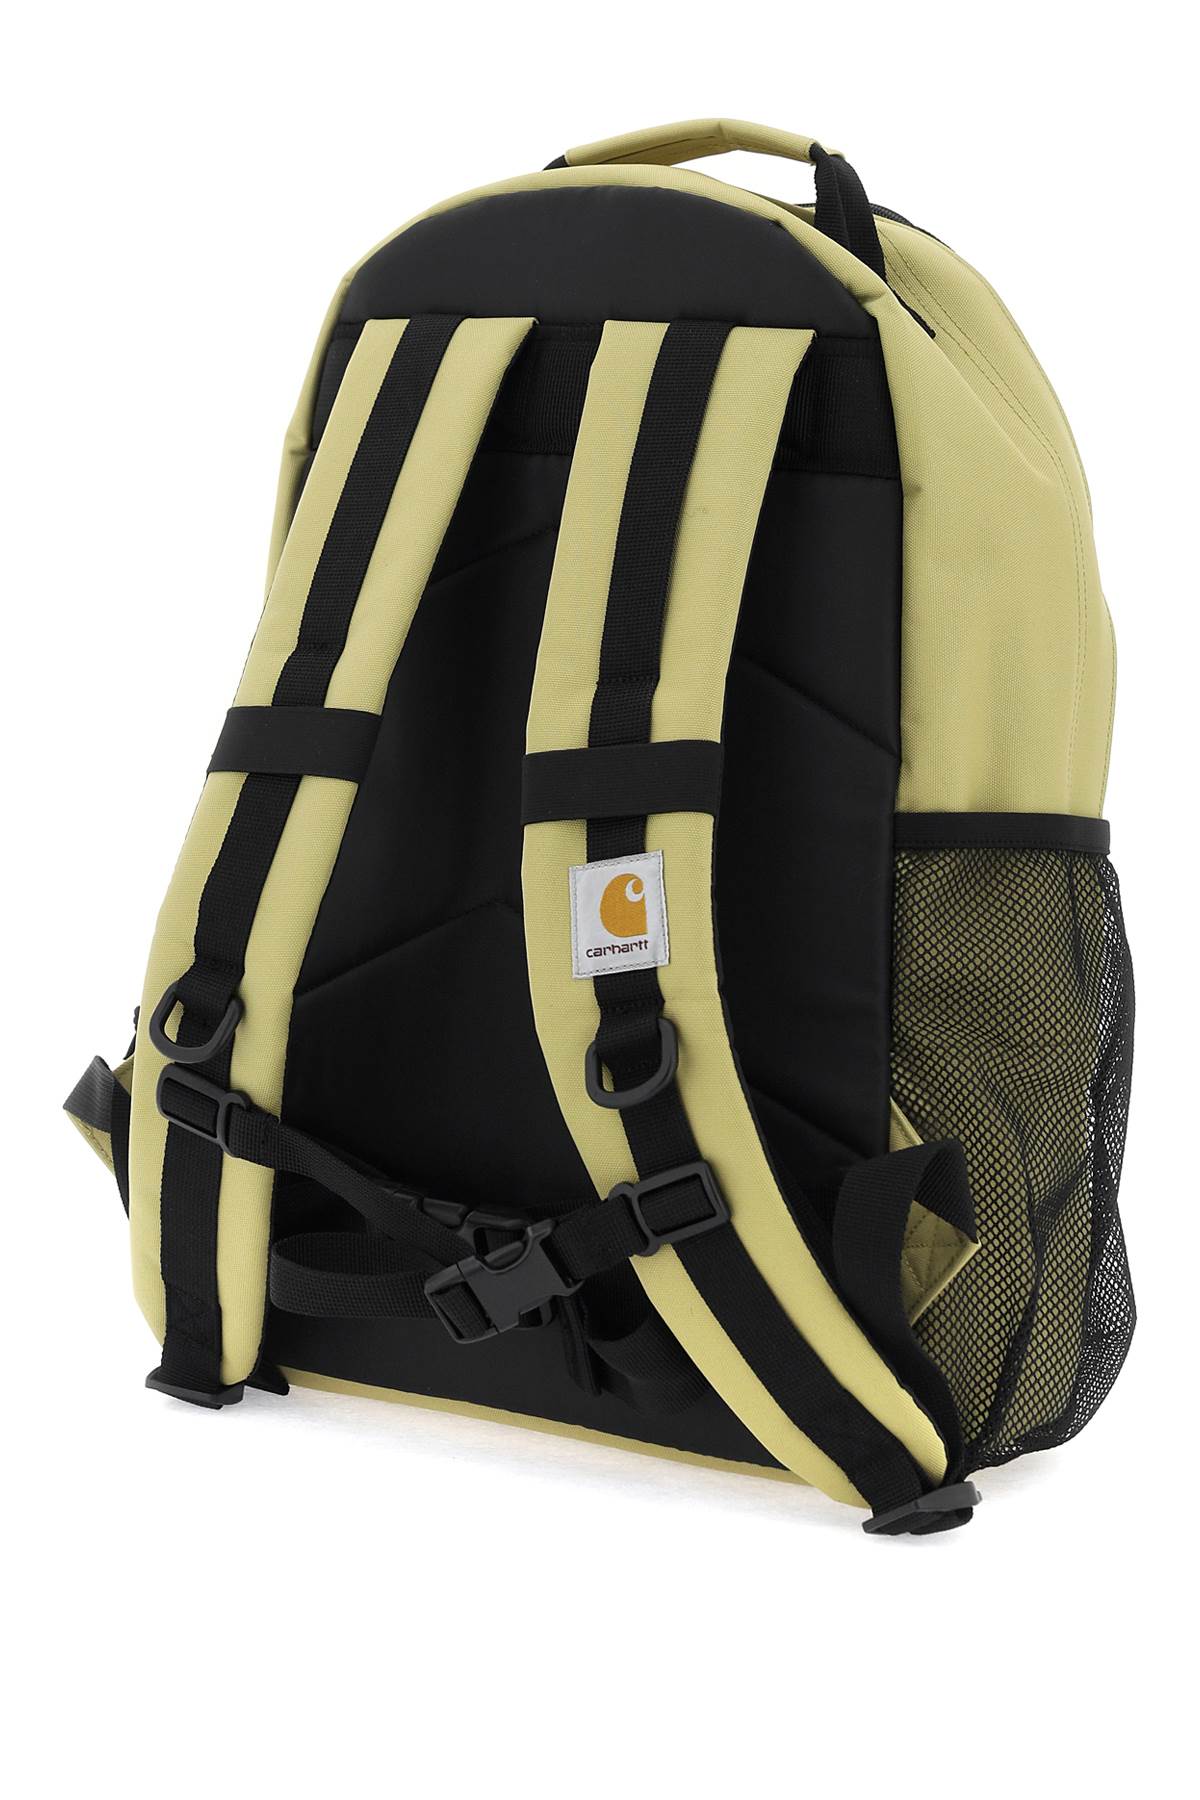 Carhartt wip kickflip backpack in recycled fabric-men > bags > backpacks-Carhartt Wip-os-Neutro-Urbanheer